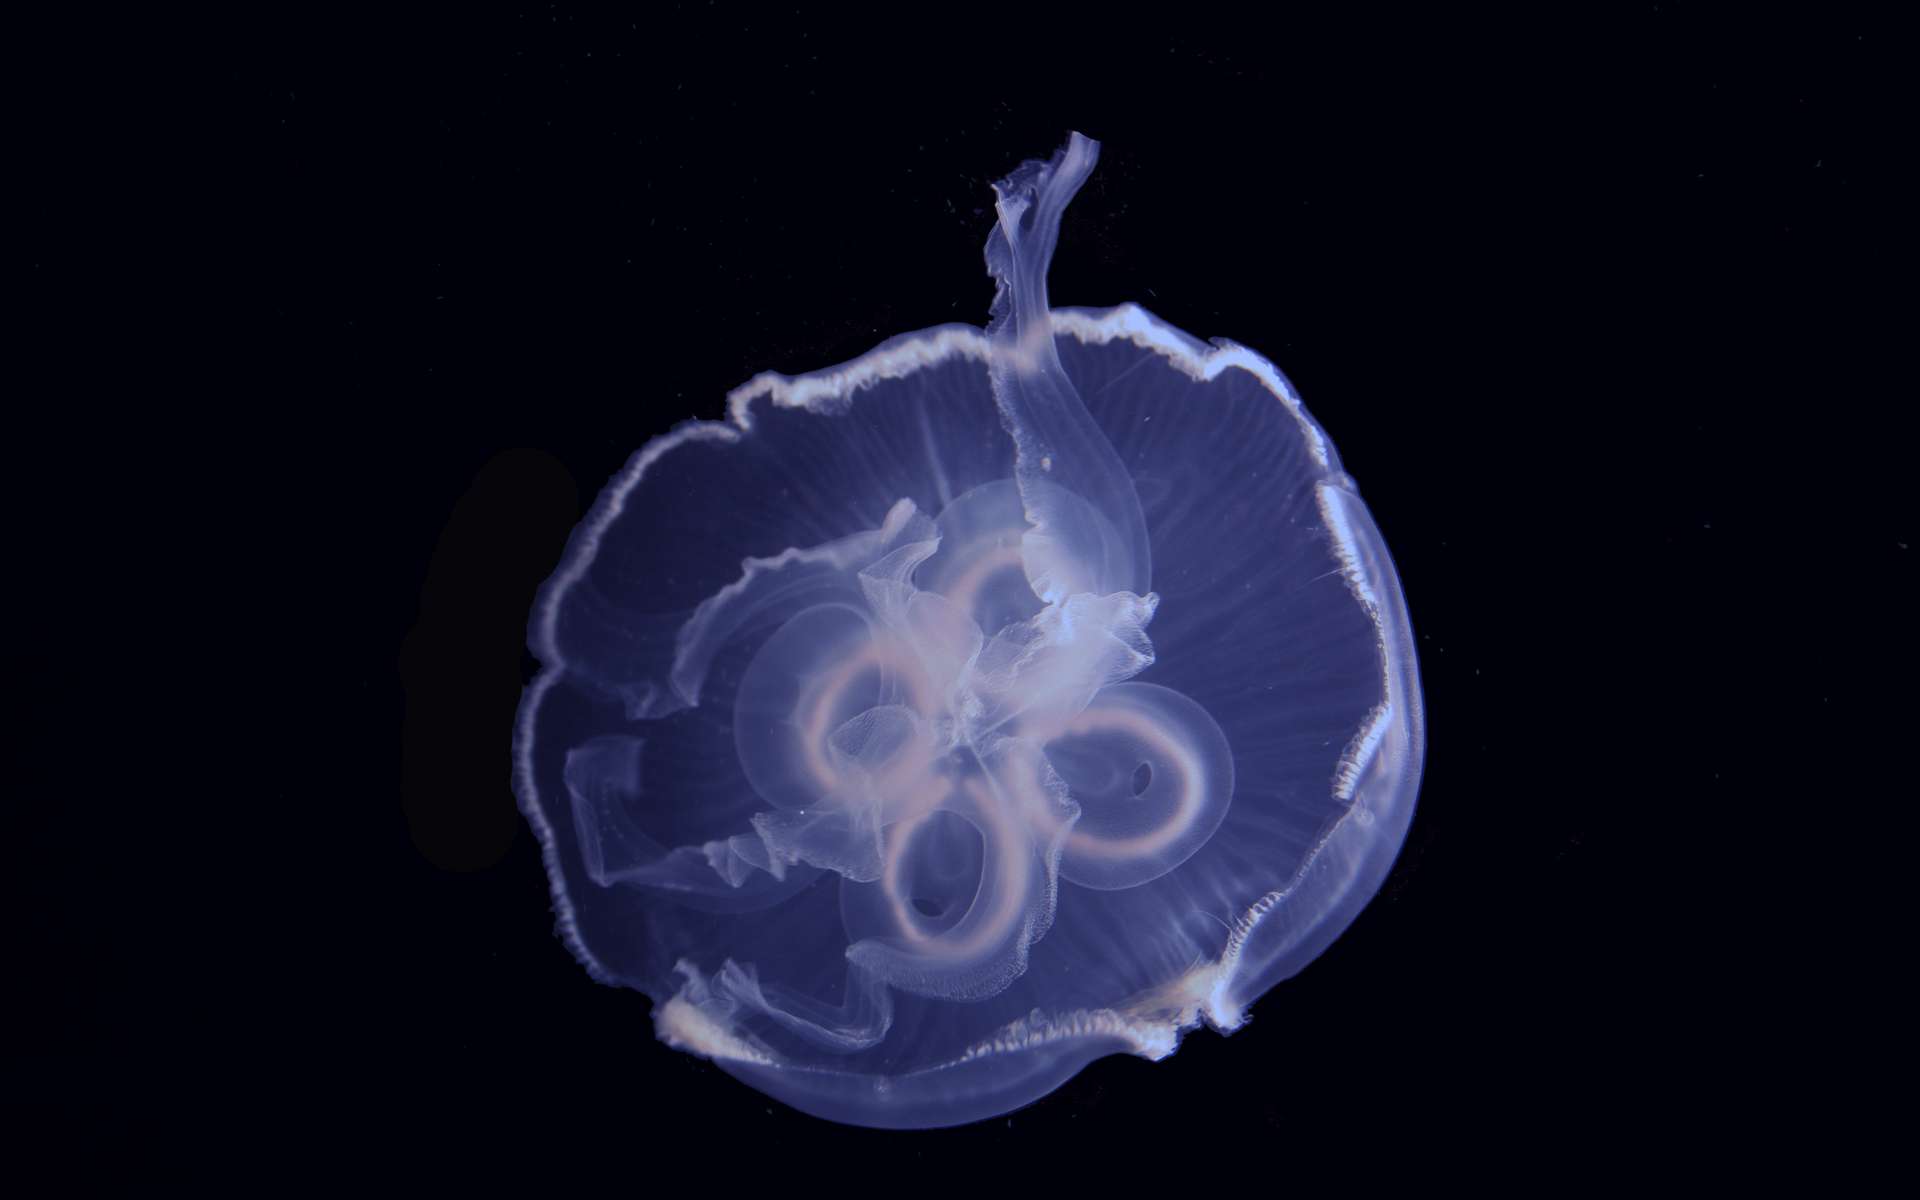 Étrangeté du vivant : les méduses, championnes de natation